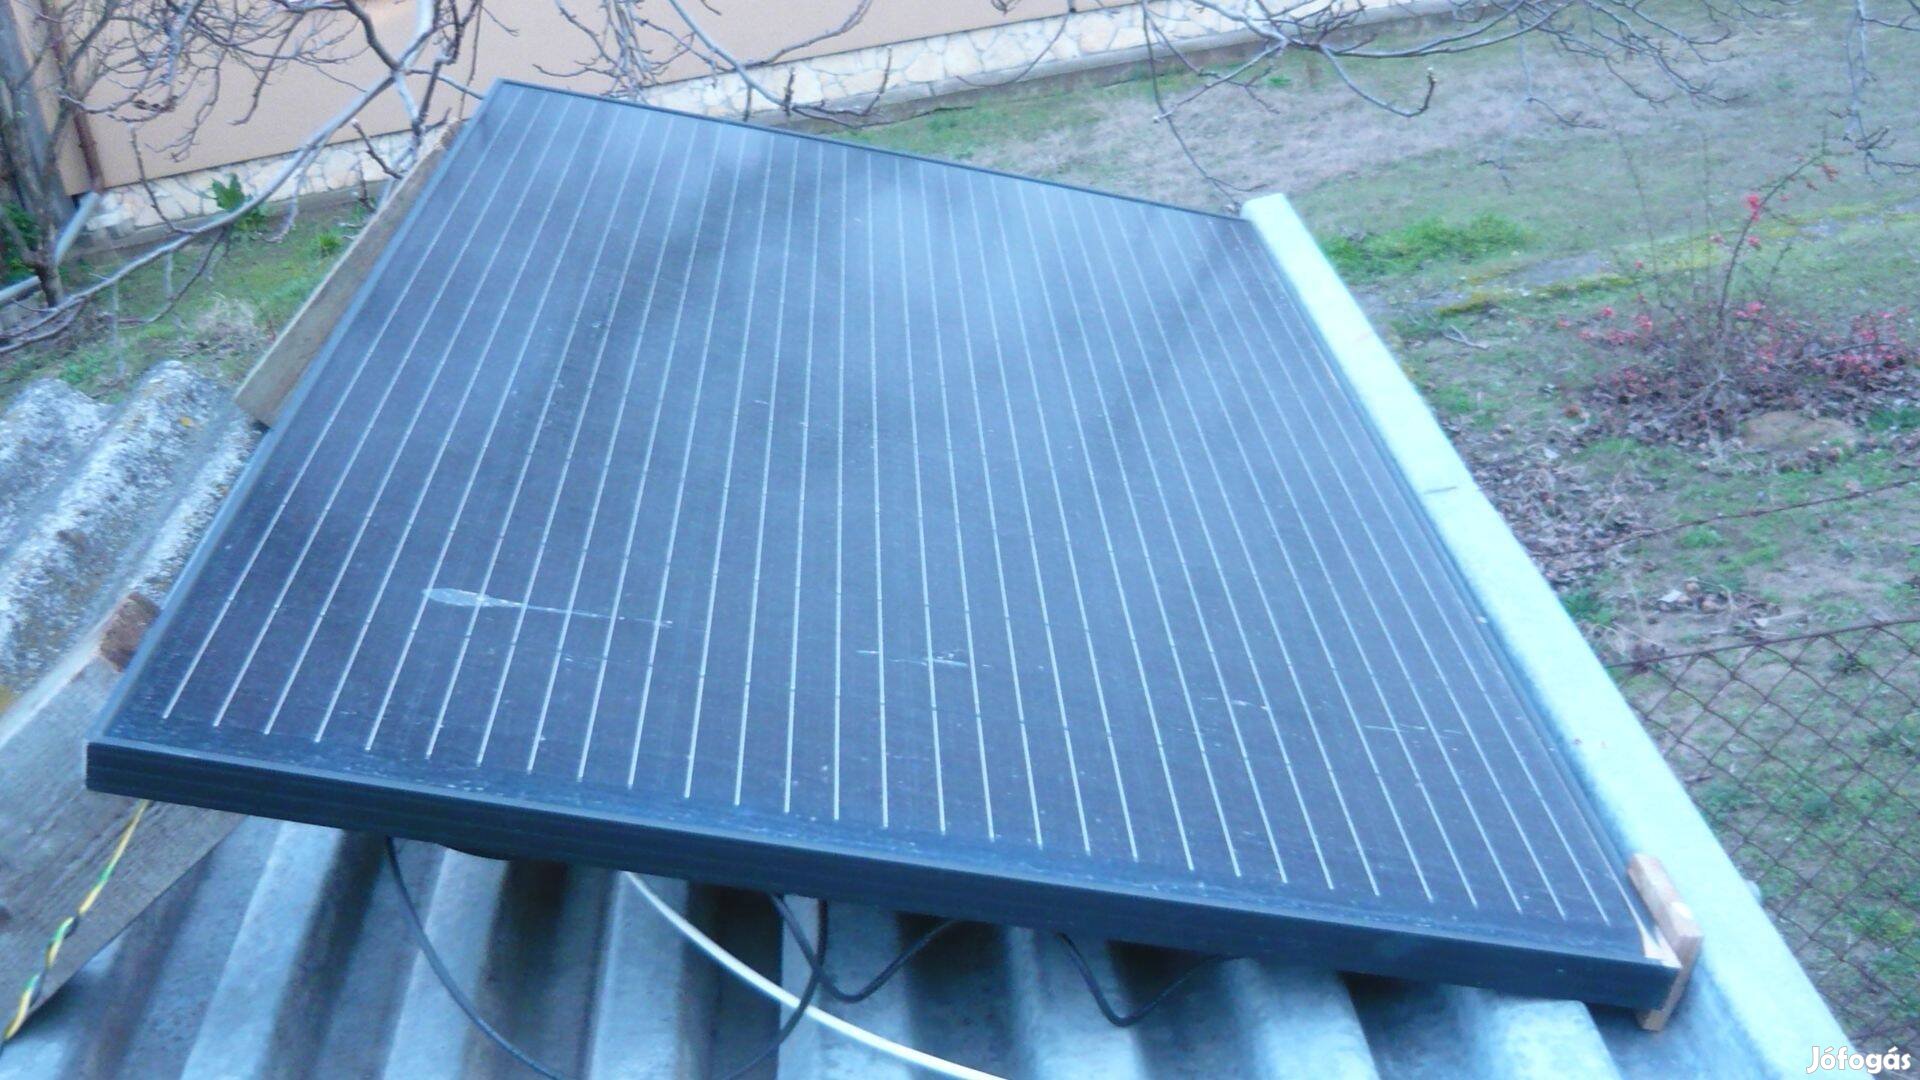 Mikro Pv:Éves 480kWh megtakarítás lehetséges 1db napelemmel is !